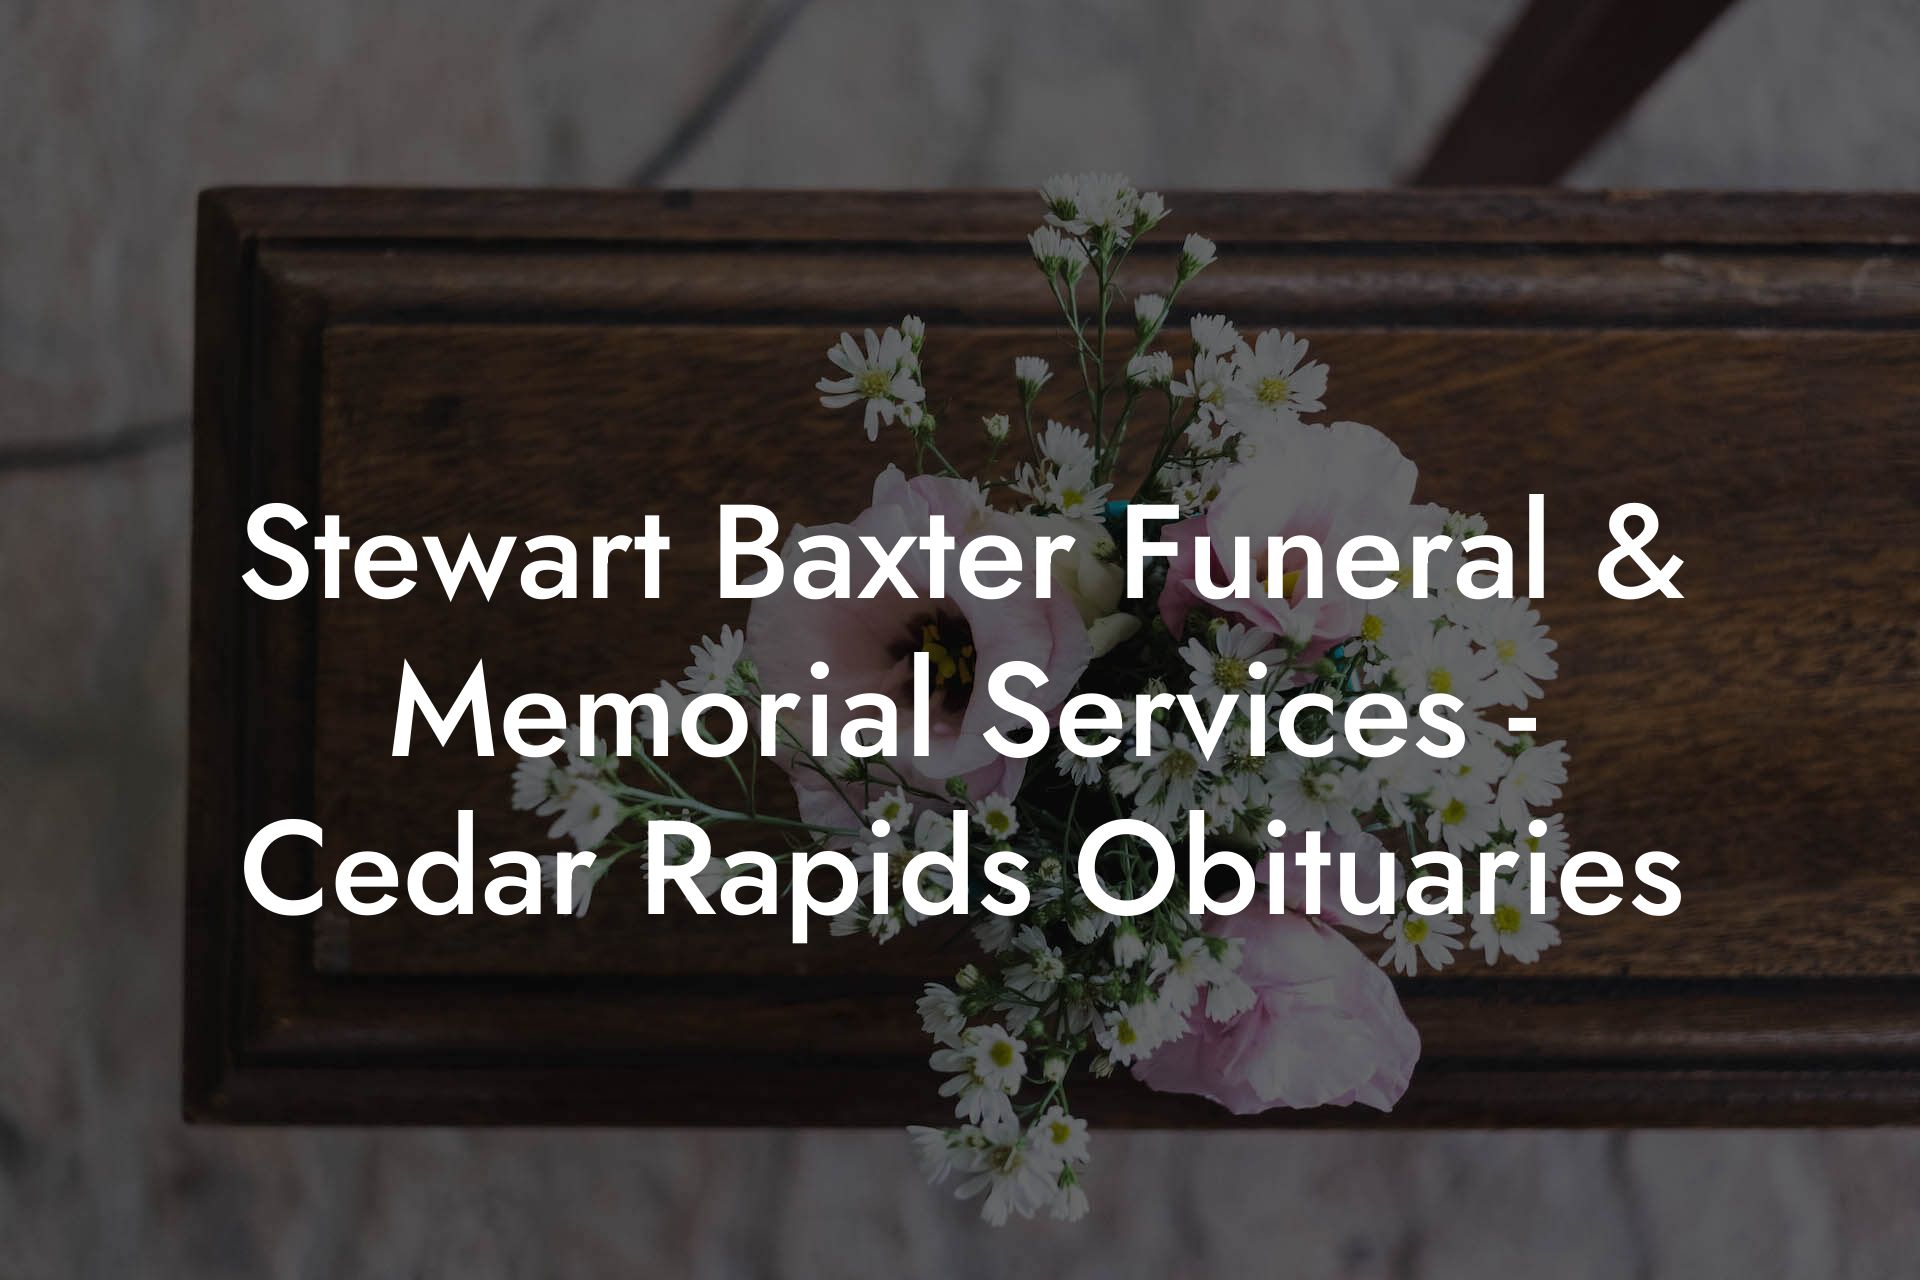 Stewart Baxter Funeral & Memorial Services - Cedar Rapids Obituaries